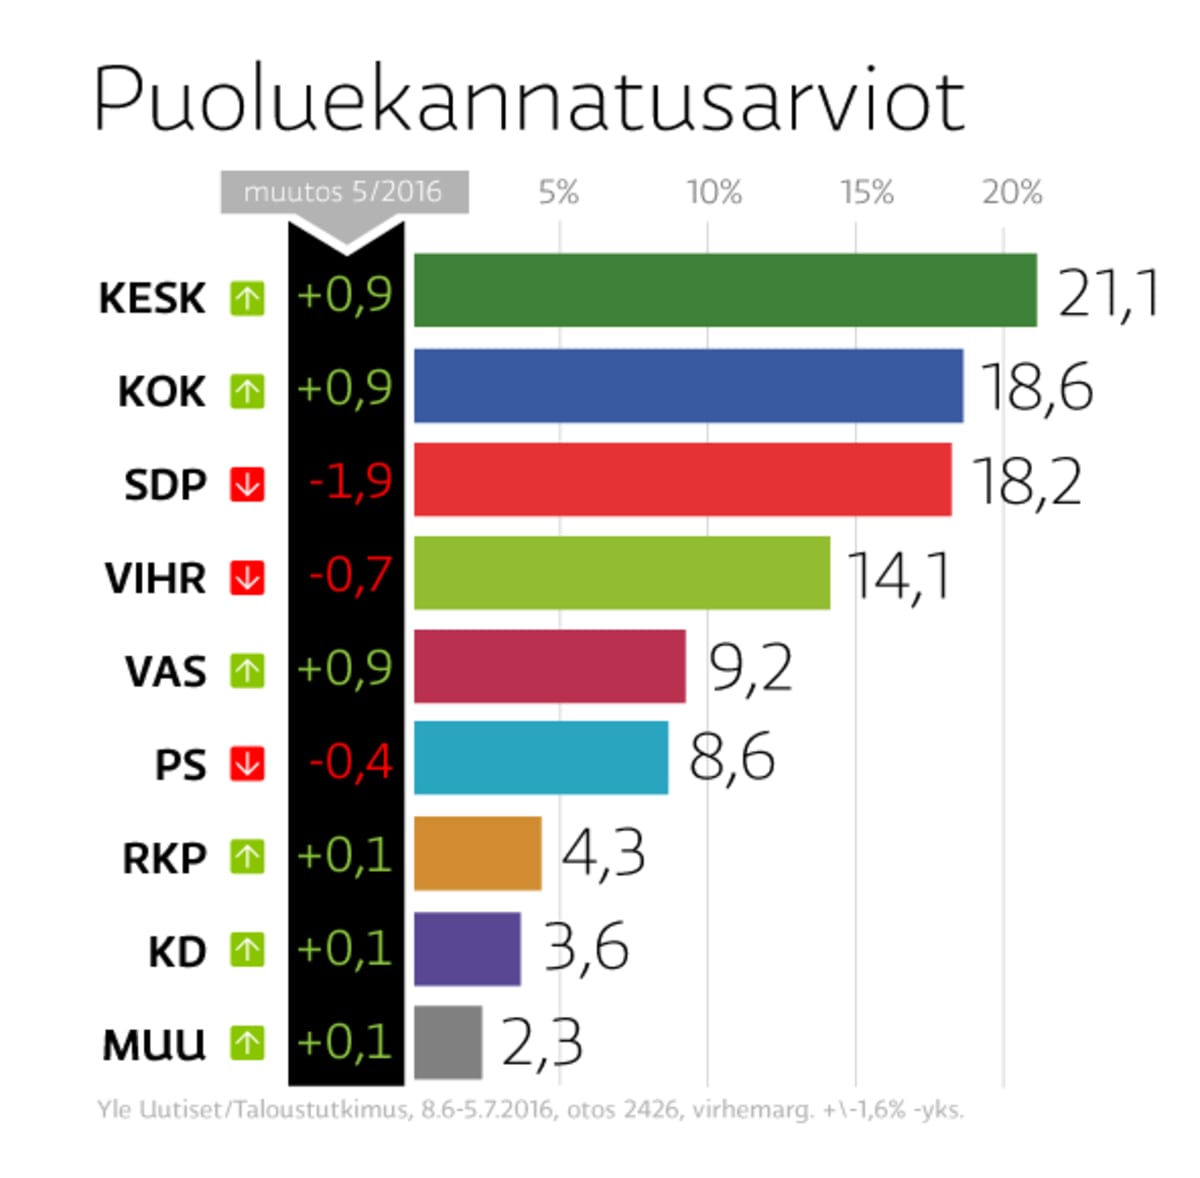 Keskusta on Suomen suurin työväenpuolue, vasemmistoliitossa duunarit  vaihtuneet valkokaulusväkeen | Yle Uutiset